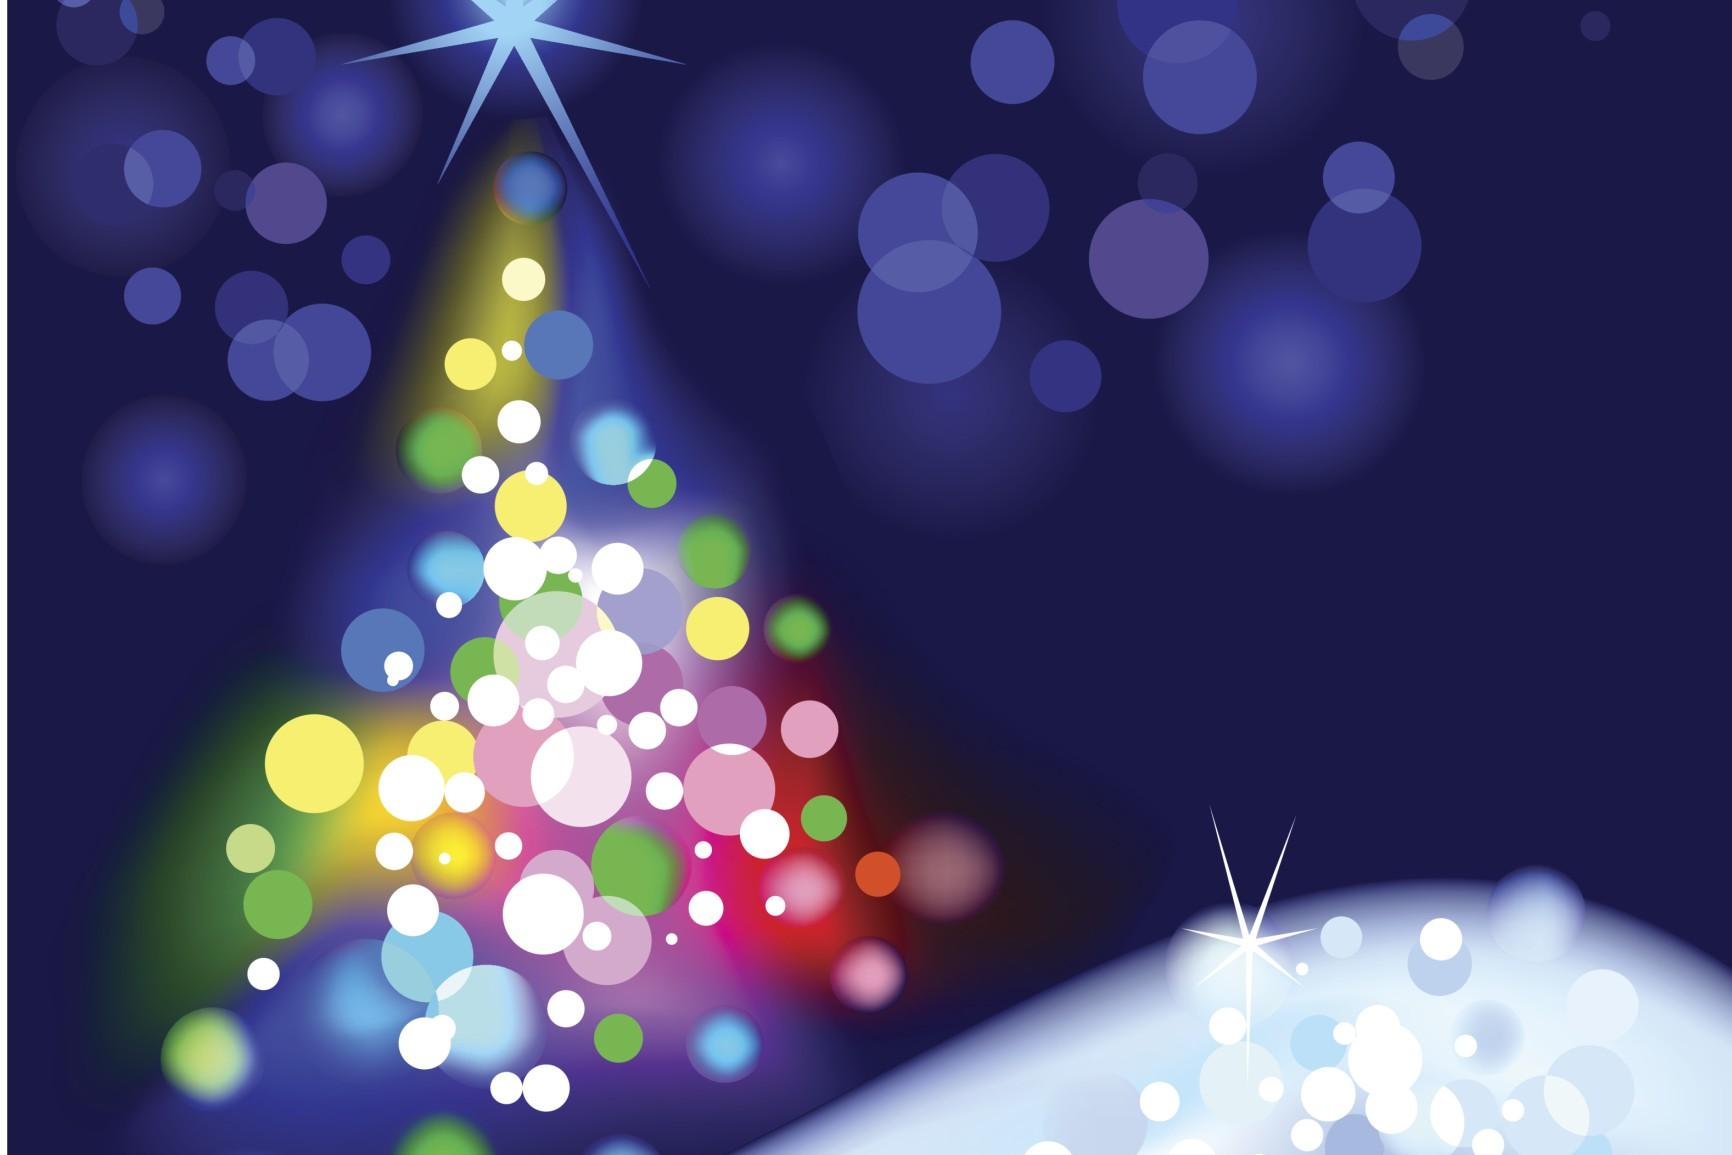 Buone Feste 19 Arriva La Vigilia Di Natale I Video Piu Simpatici E Significativi Per Gli Auguri Su Facebook E Whatsapp Meteoweb